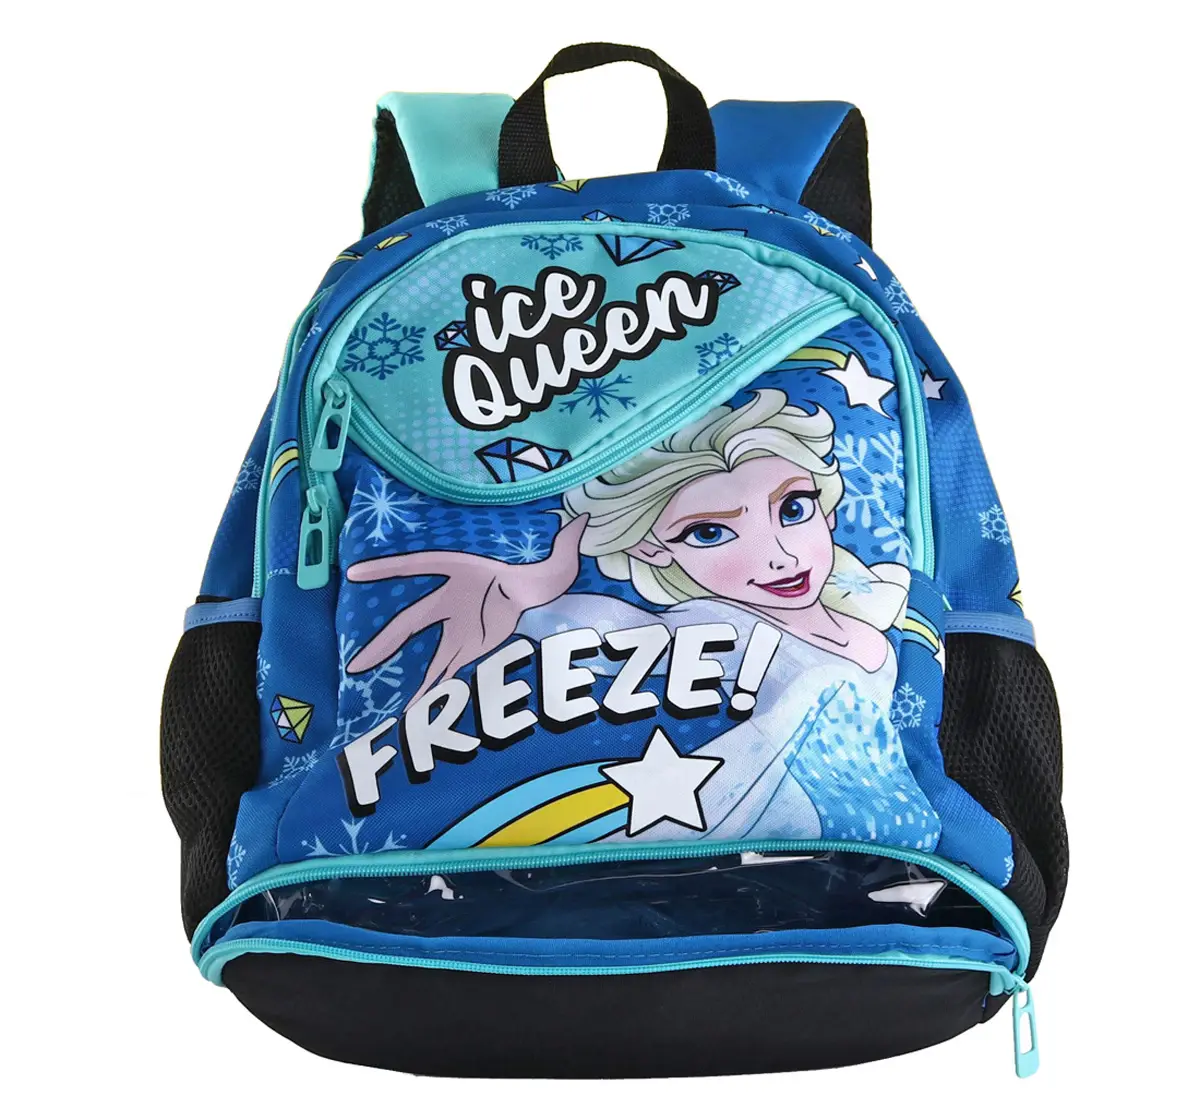 Disney Elsa School Bag with Lunch Box Compartment 43 cm Blue 6Y+